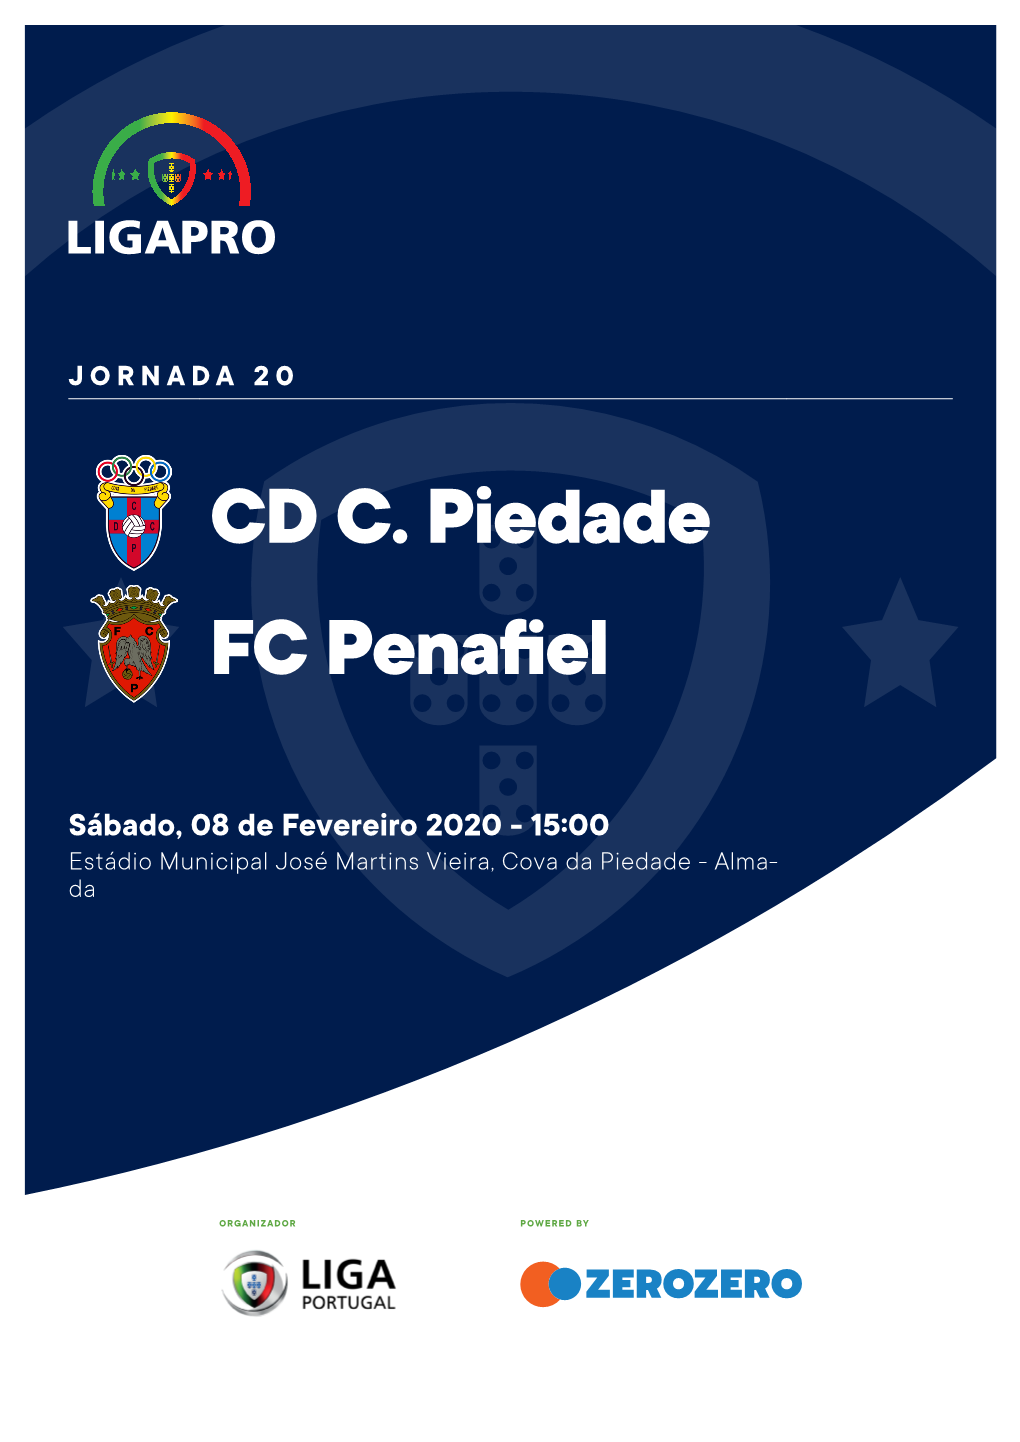 CD C. Piedade FC Penafiel